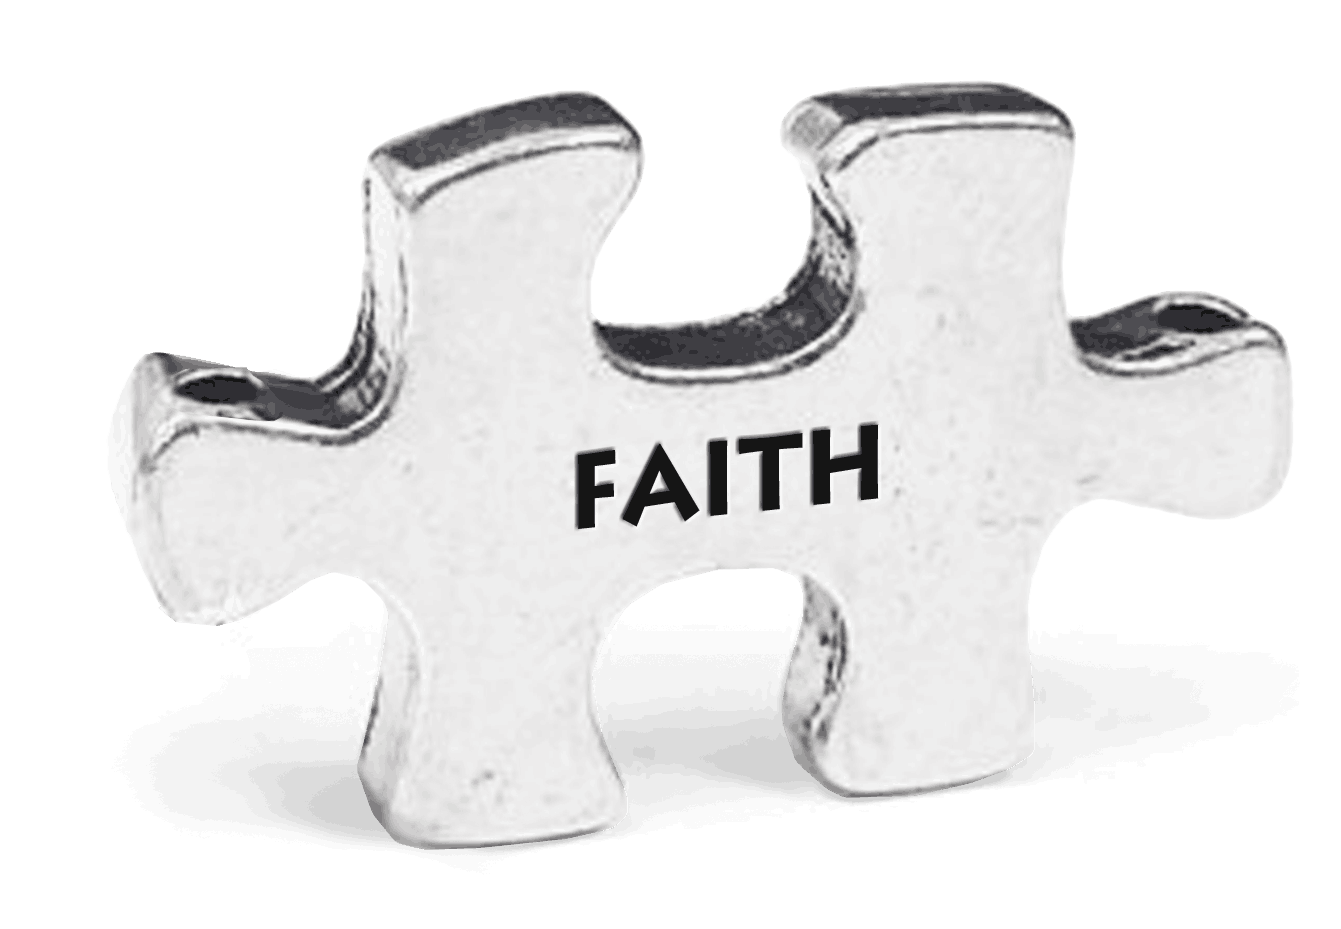 Faith Puzzle Token on Key Loop